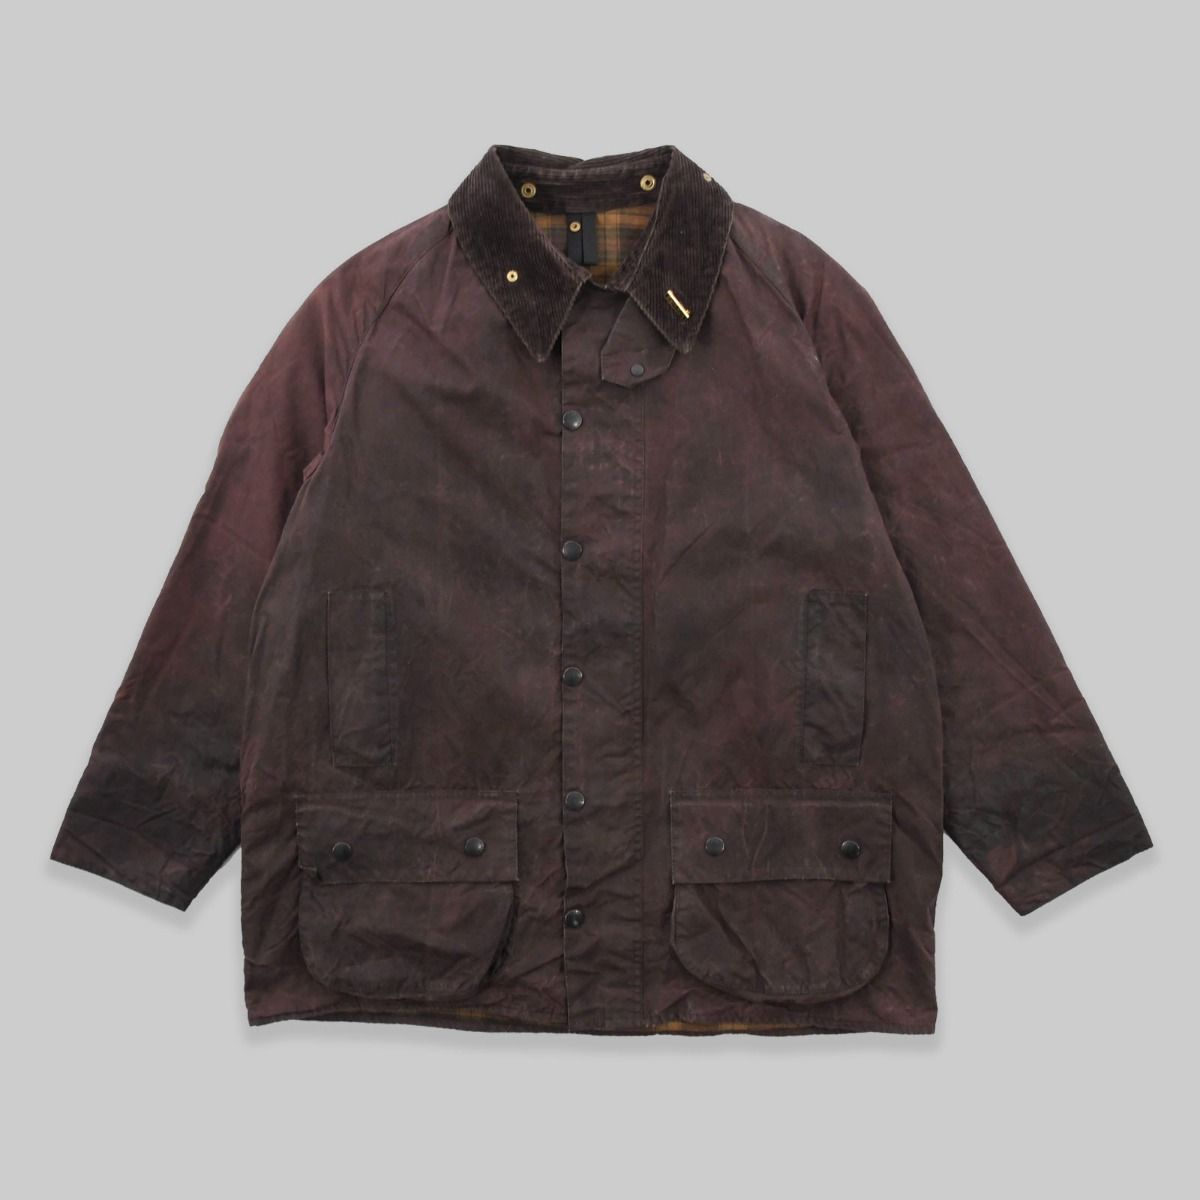 Barbour 1990s Beaufort Wax Cotton Brown Jacket